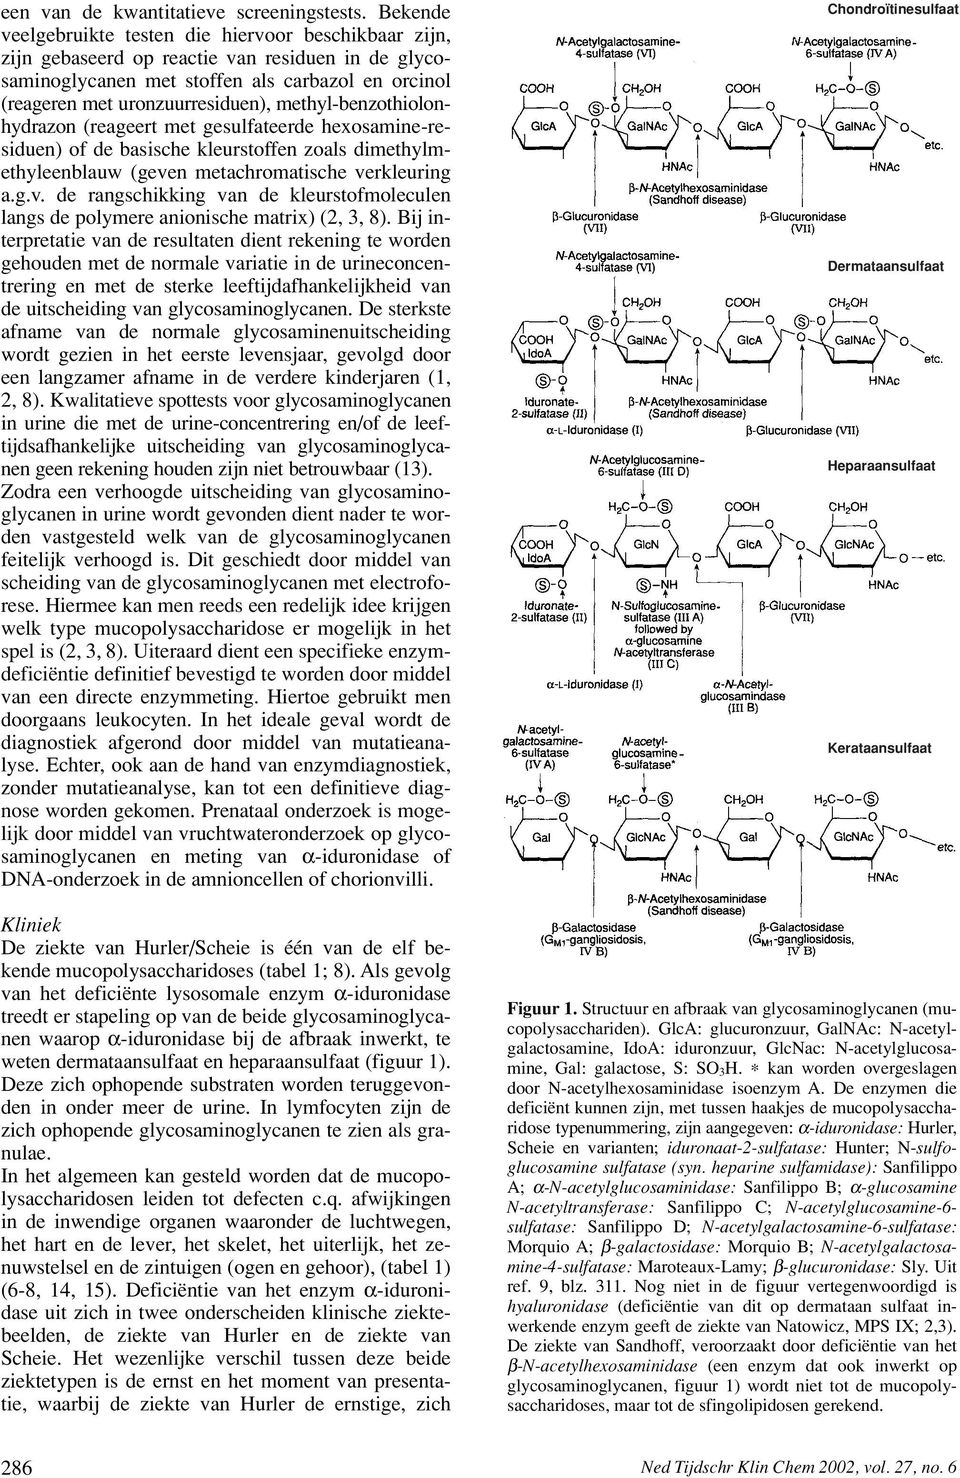 methyl-benzothiolonhydrazon (reageert met gesulfateerde hexosamine-residuen) of de basische kleurstoffen zoals dimethylmethyleenblauw (geve